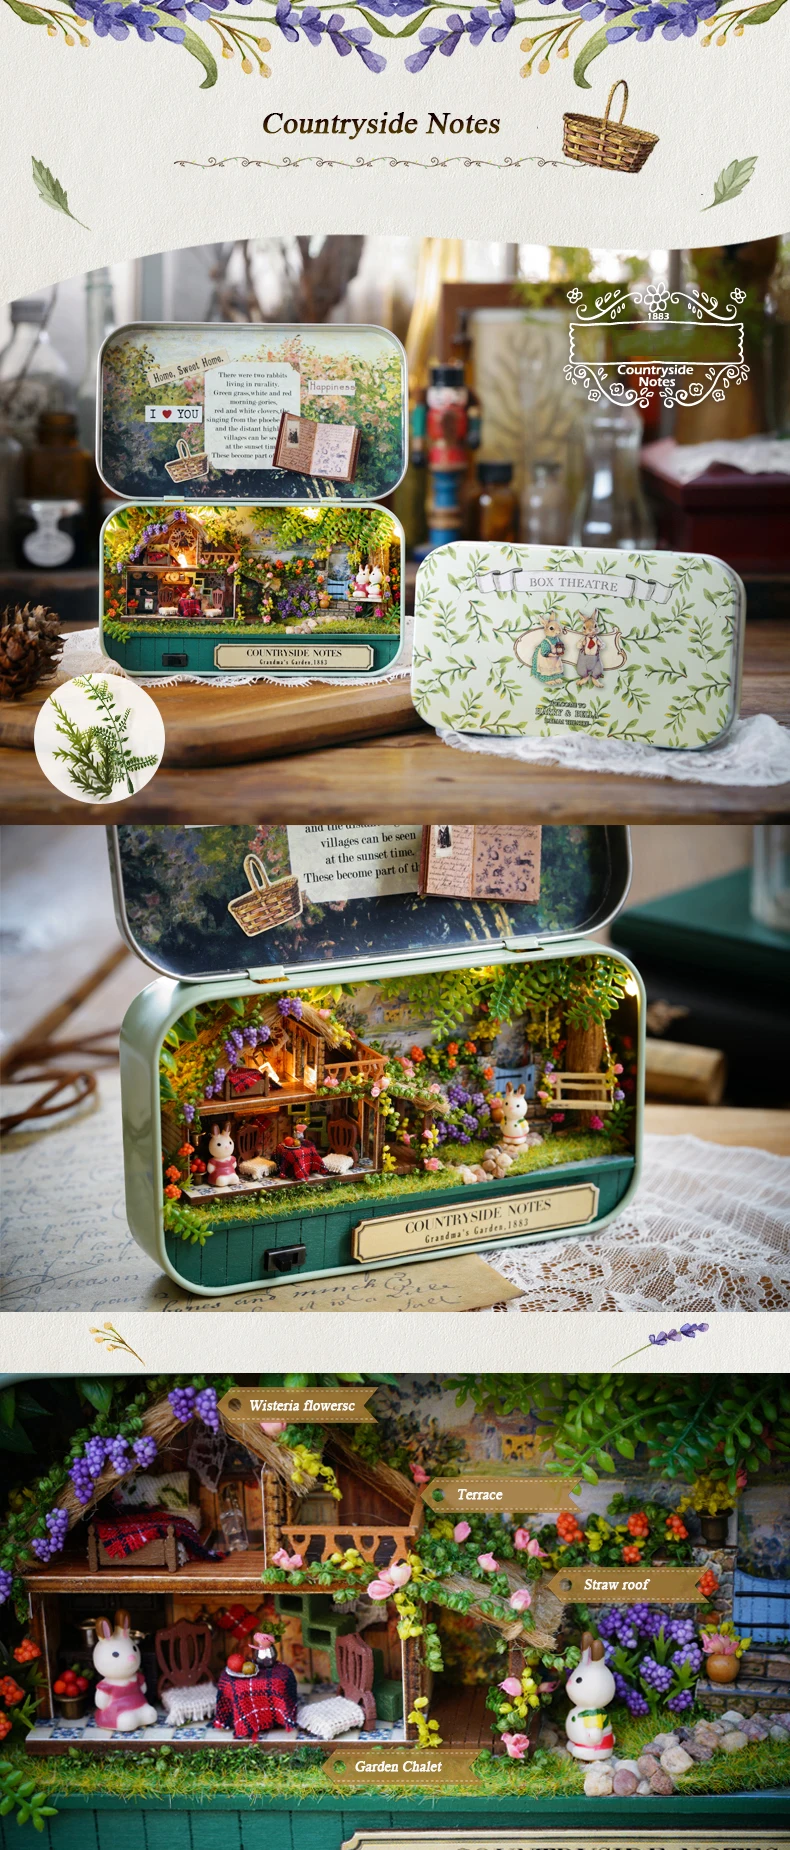 Коробка театральная ностальгическая тема миниатюрная сцена деревянная миниатюрная игрушка-головоломка DIY Кукольный дом мебель сельская местность Примечания Q серия# E